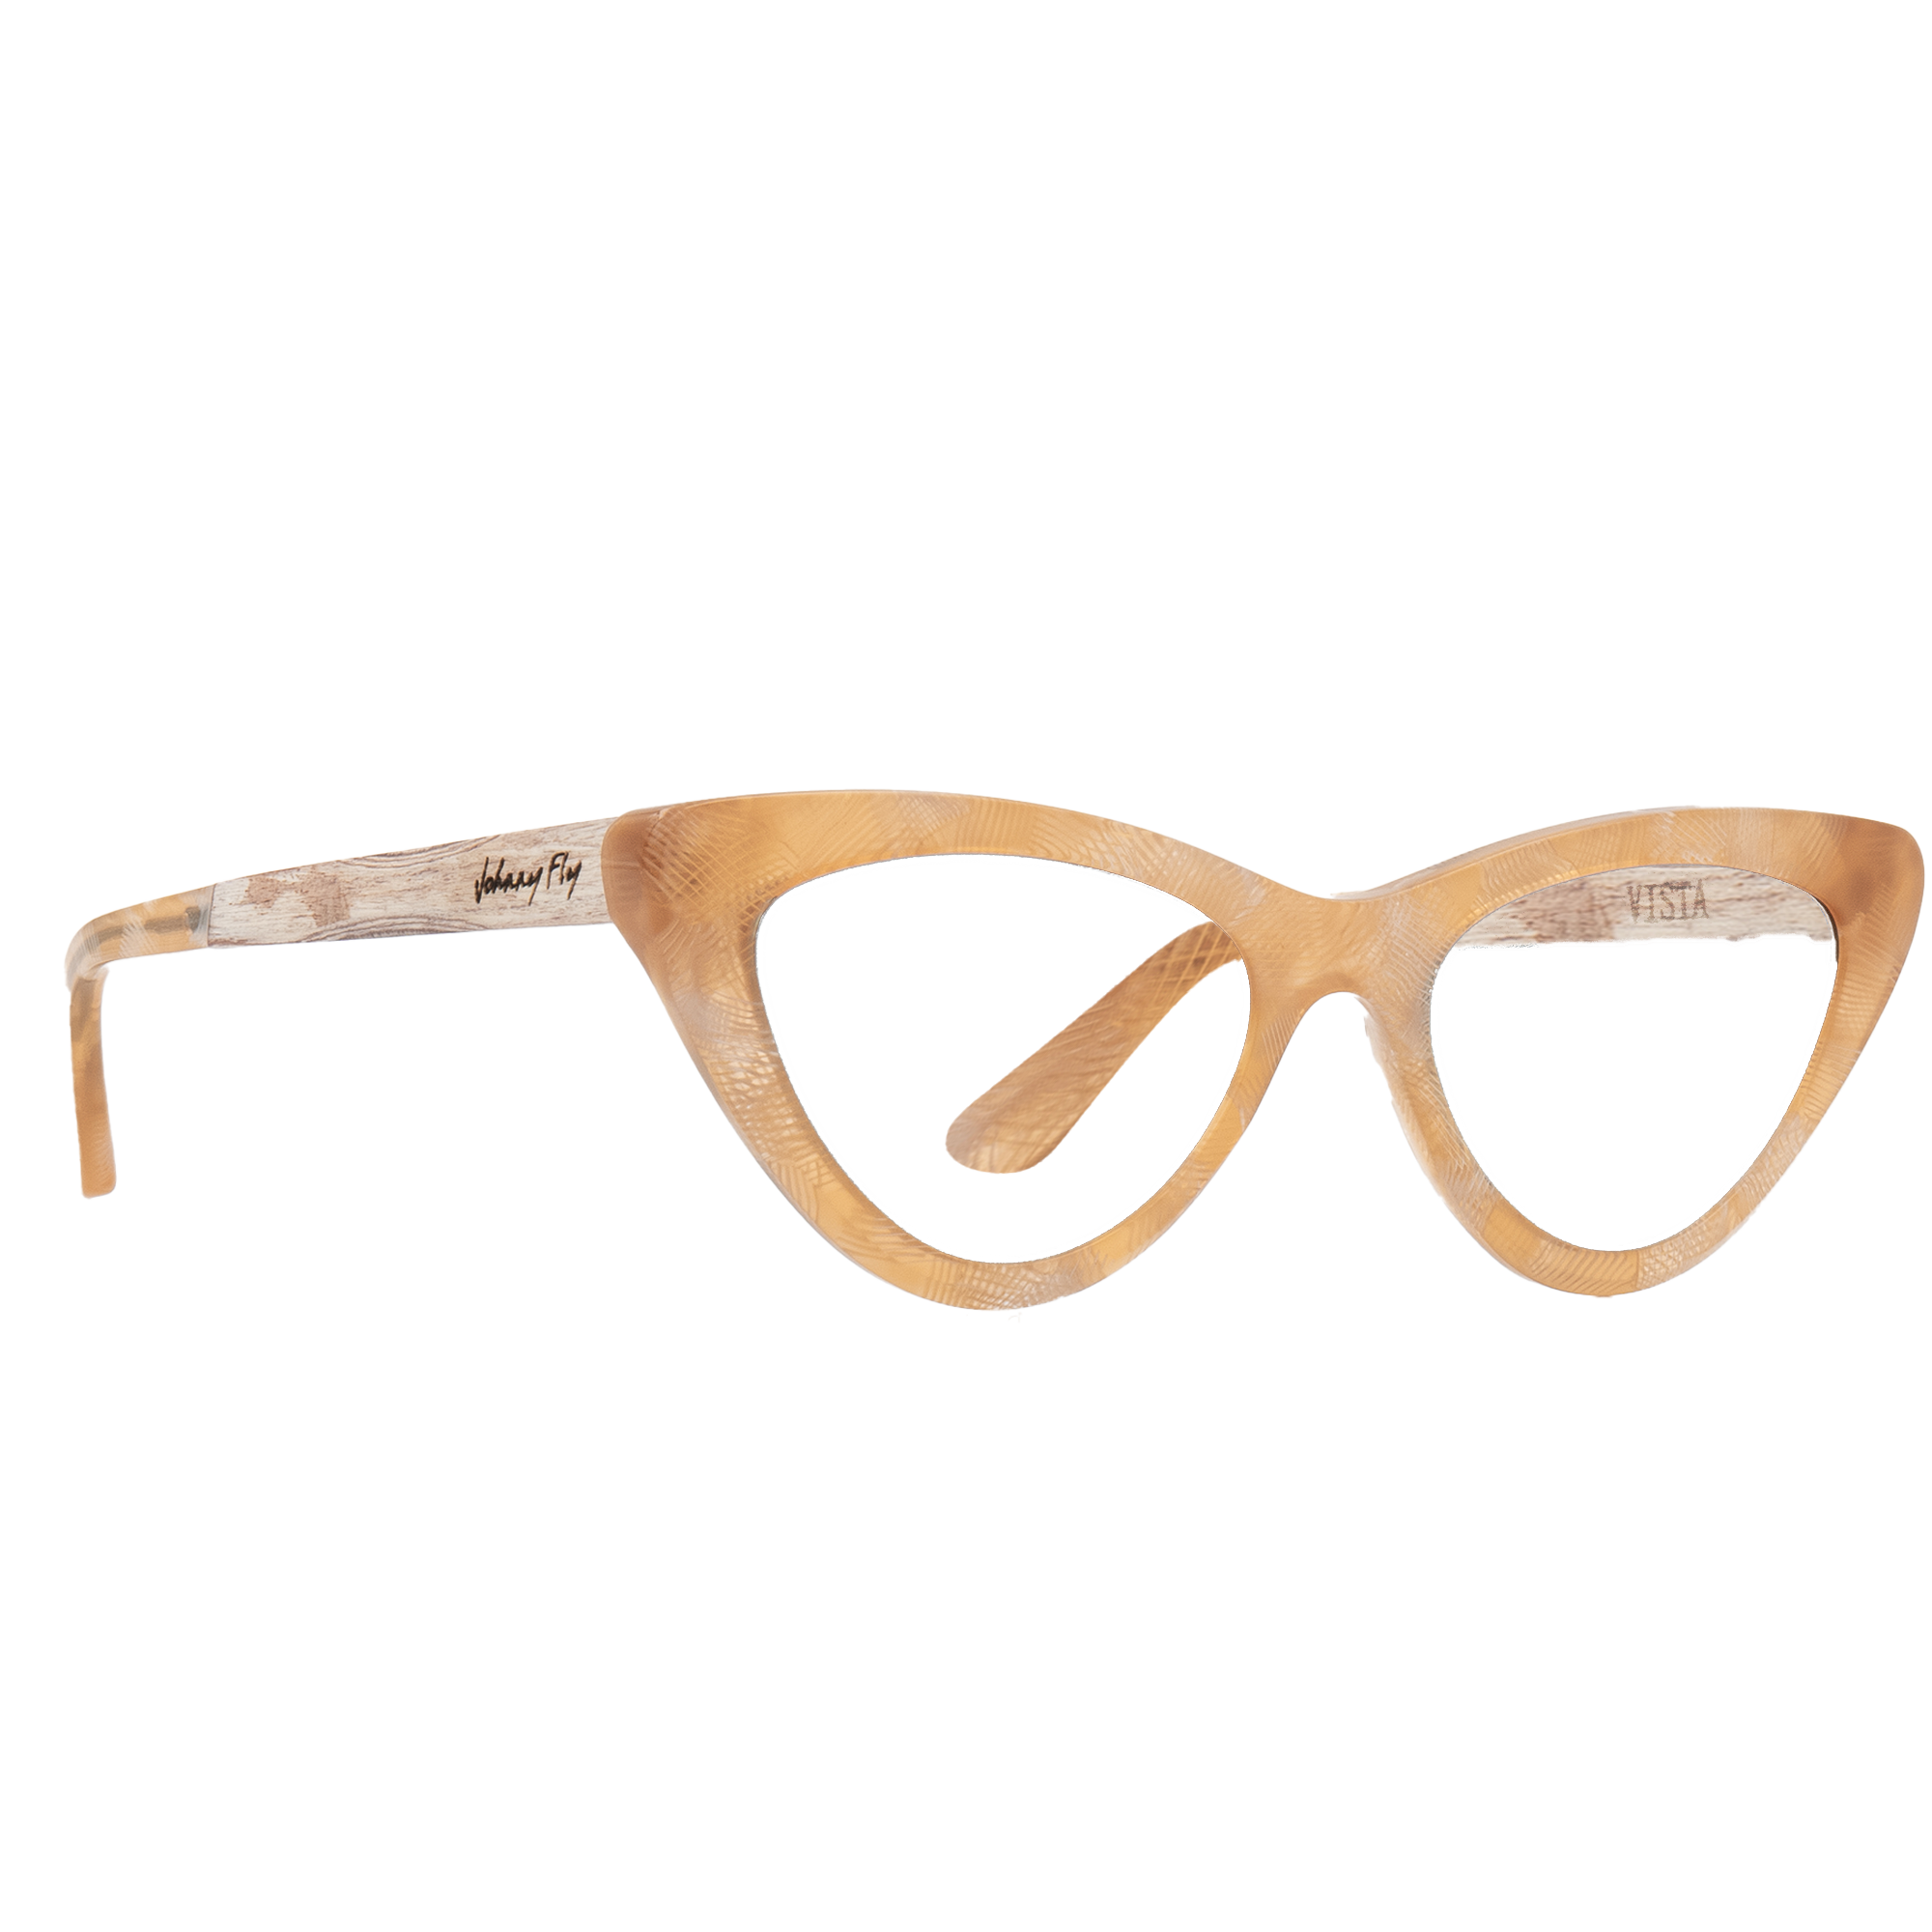 VISTA Frame - Mimosa - Eyeglasses Frame - Johnny Fly Eyewear | 